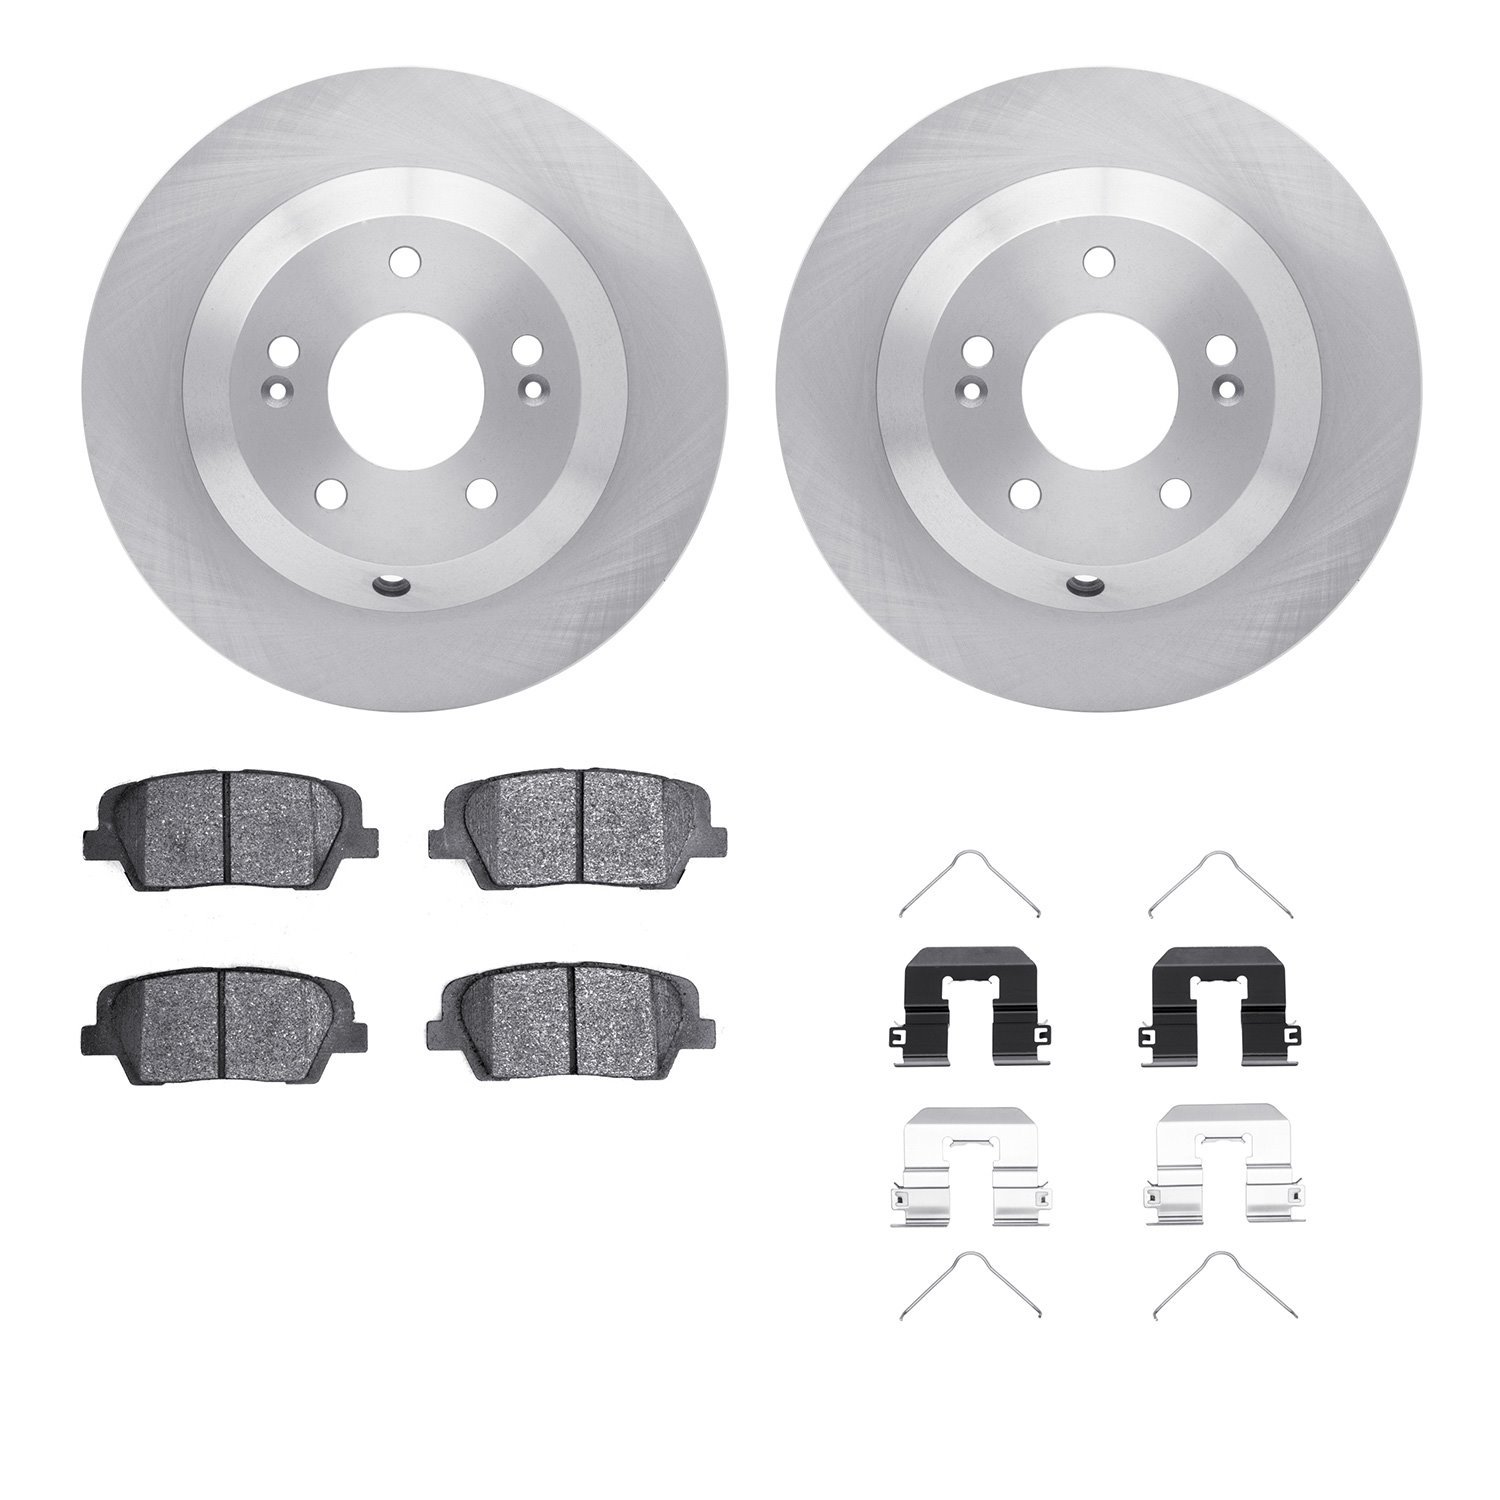 6312-21042 Brake Rotors with 3000-Series Ceramic Brake Pads Kit with Hardware, 2015-2020 Kia/Hyundai/Genesis, Position: Rear